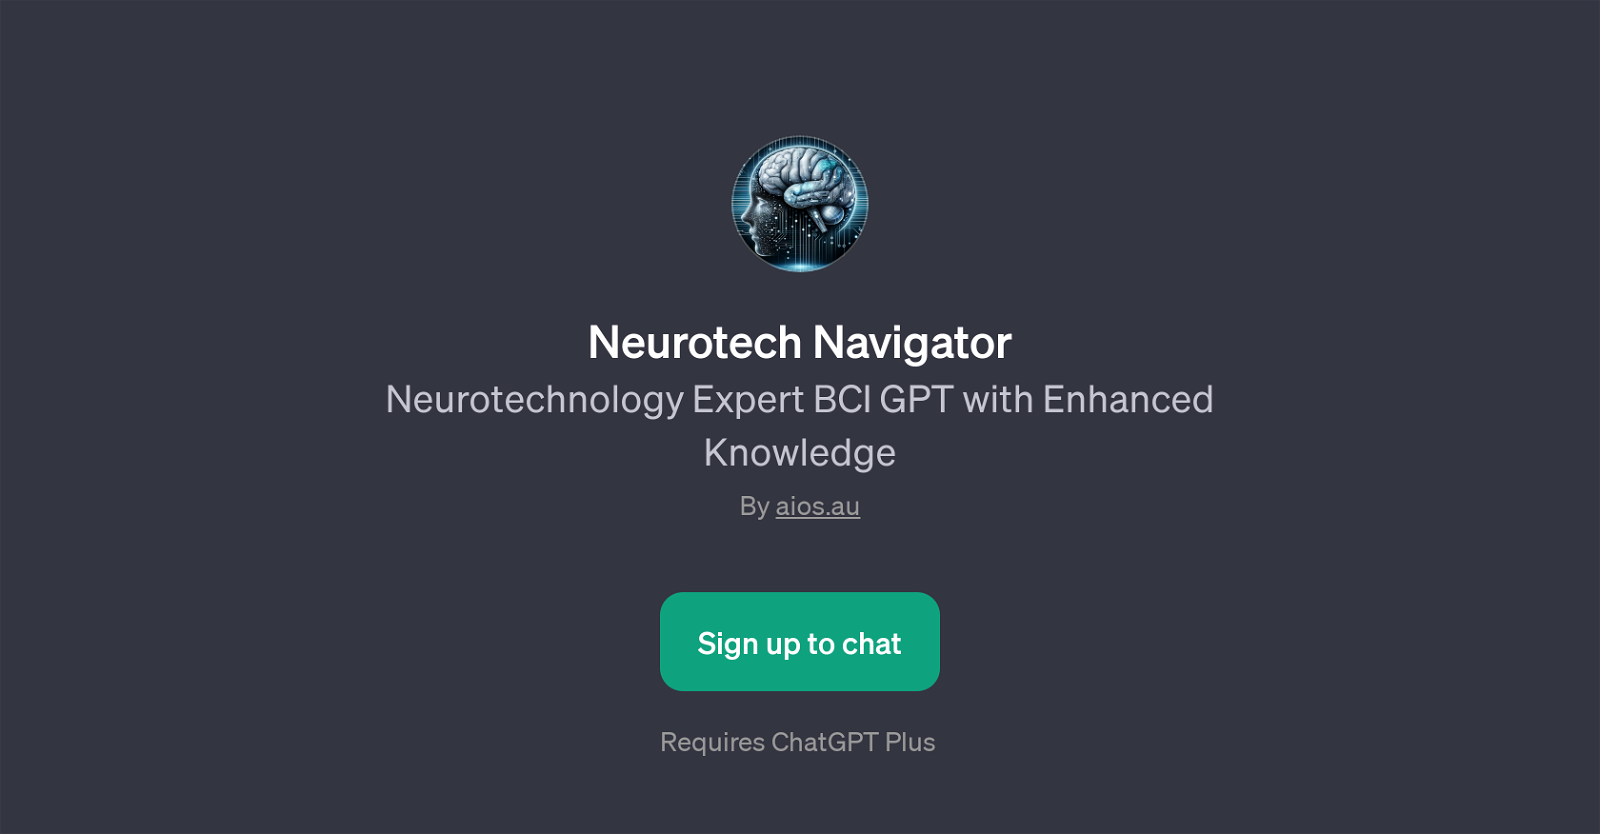 Neurotech Navigator website